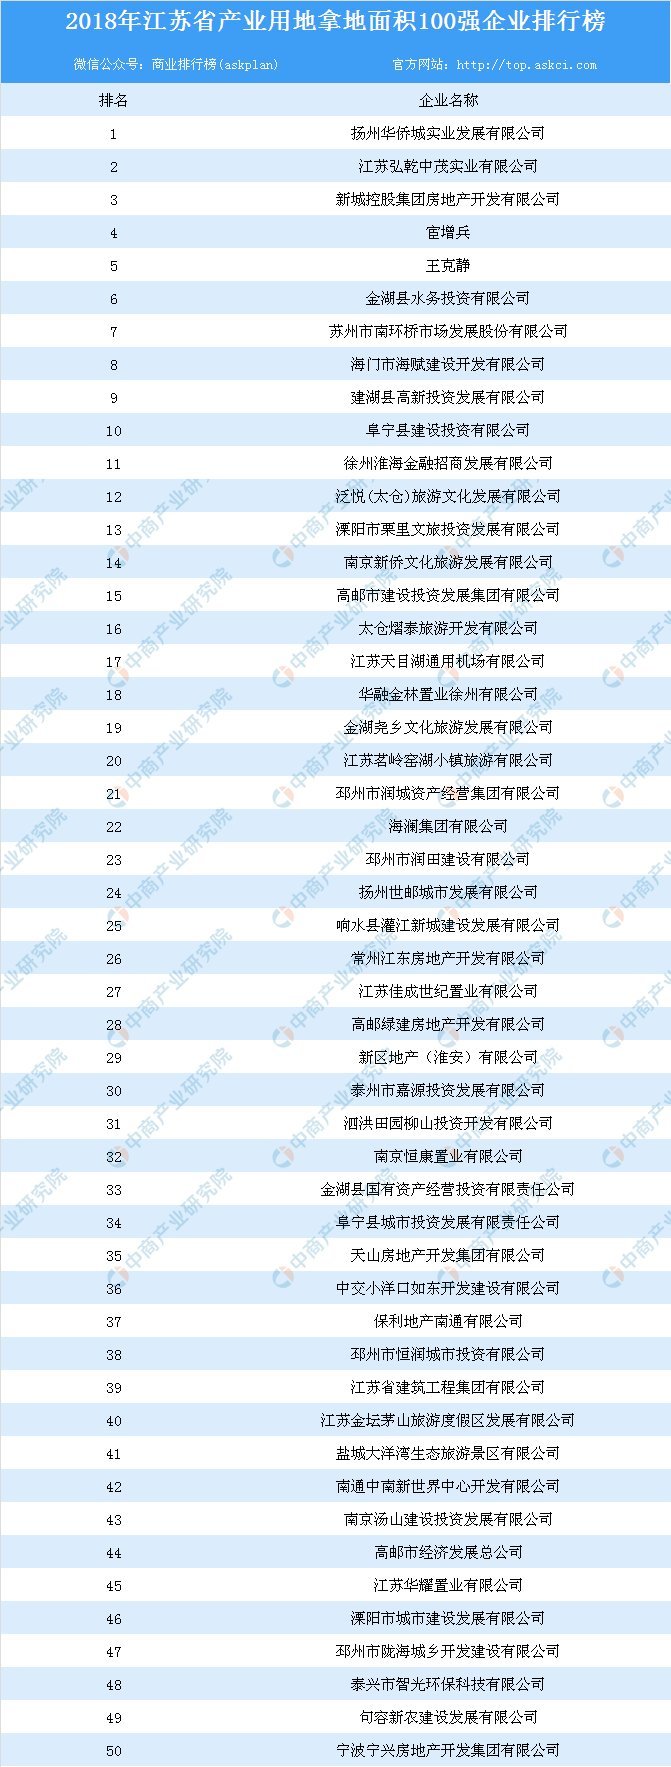 商业地产:2018年江苏省商业用地拿地面积100